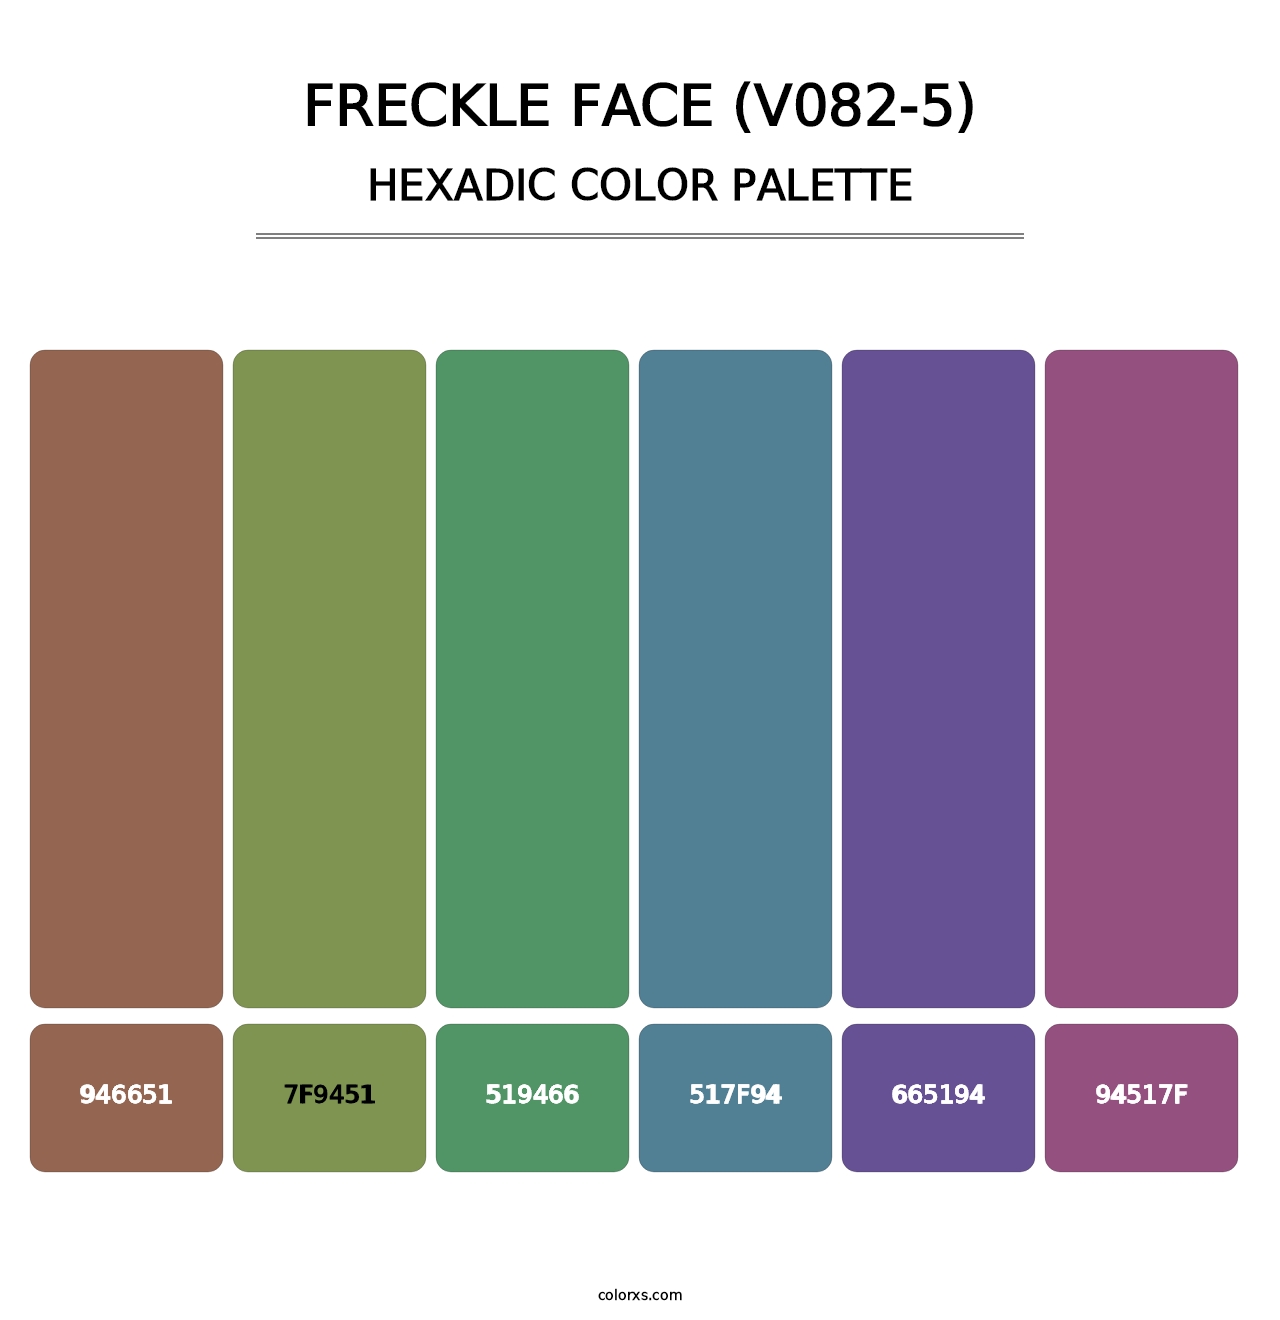 Freckle Face (V082-5) - Hexadic Color Palette